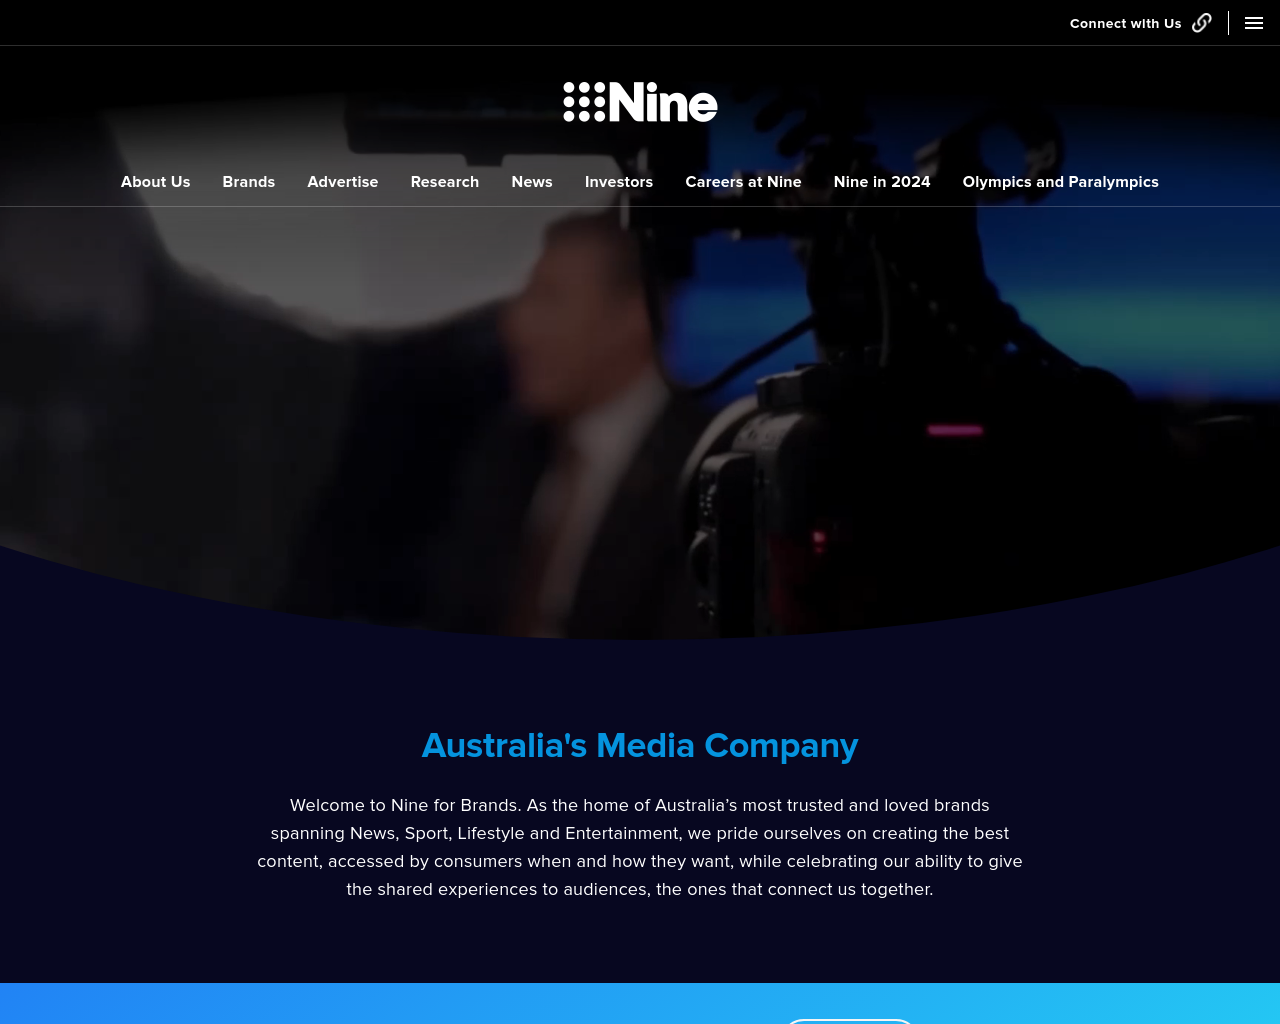 fairfaxmedia.com.au